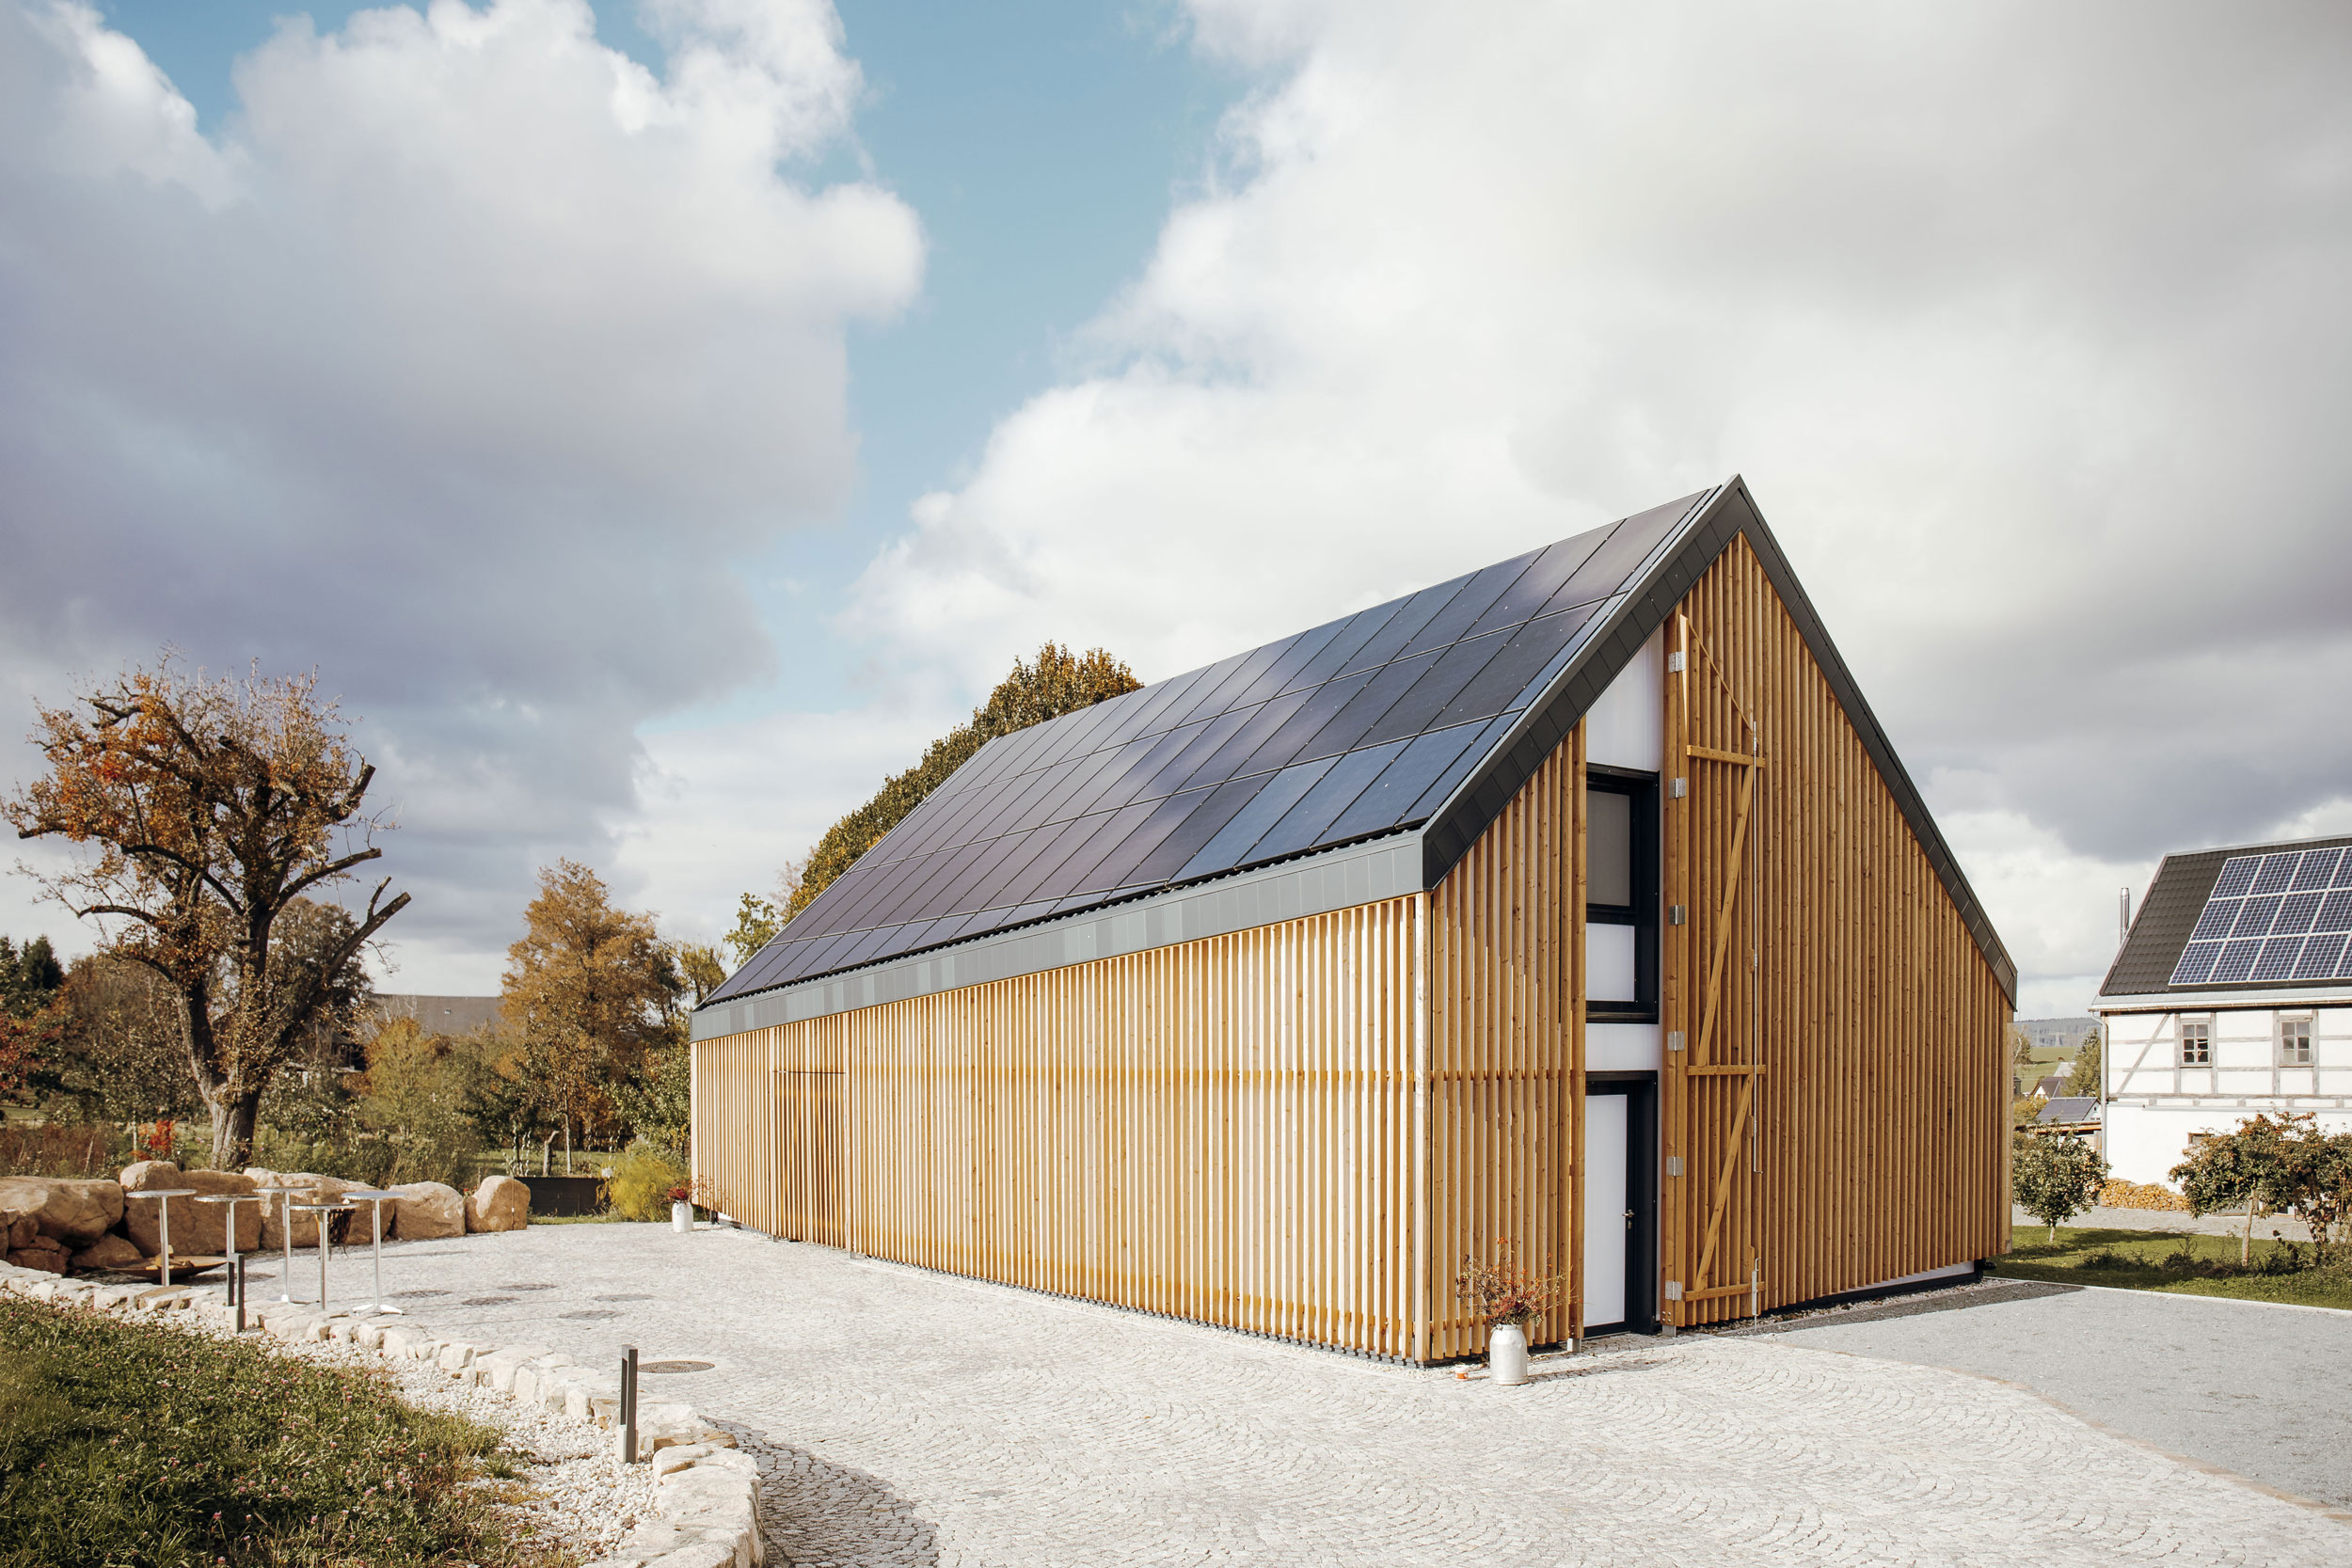 Modernes Haus mit Holzverkleidung, asymmetrischem Spitzdach und Solarpaneelen auf dem Dach. Dahinter Bäume und Himmel mit Wolken.